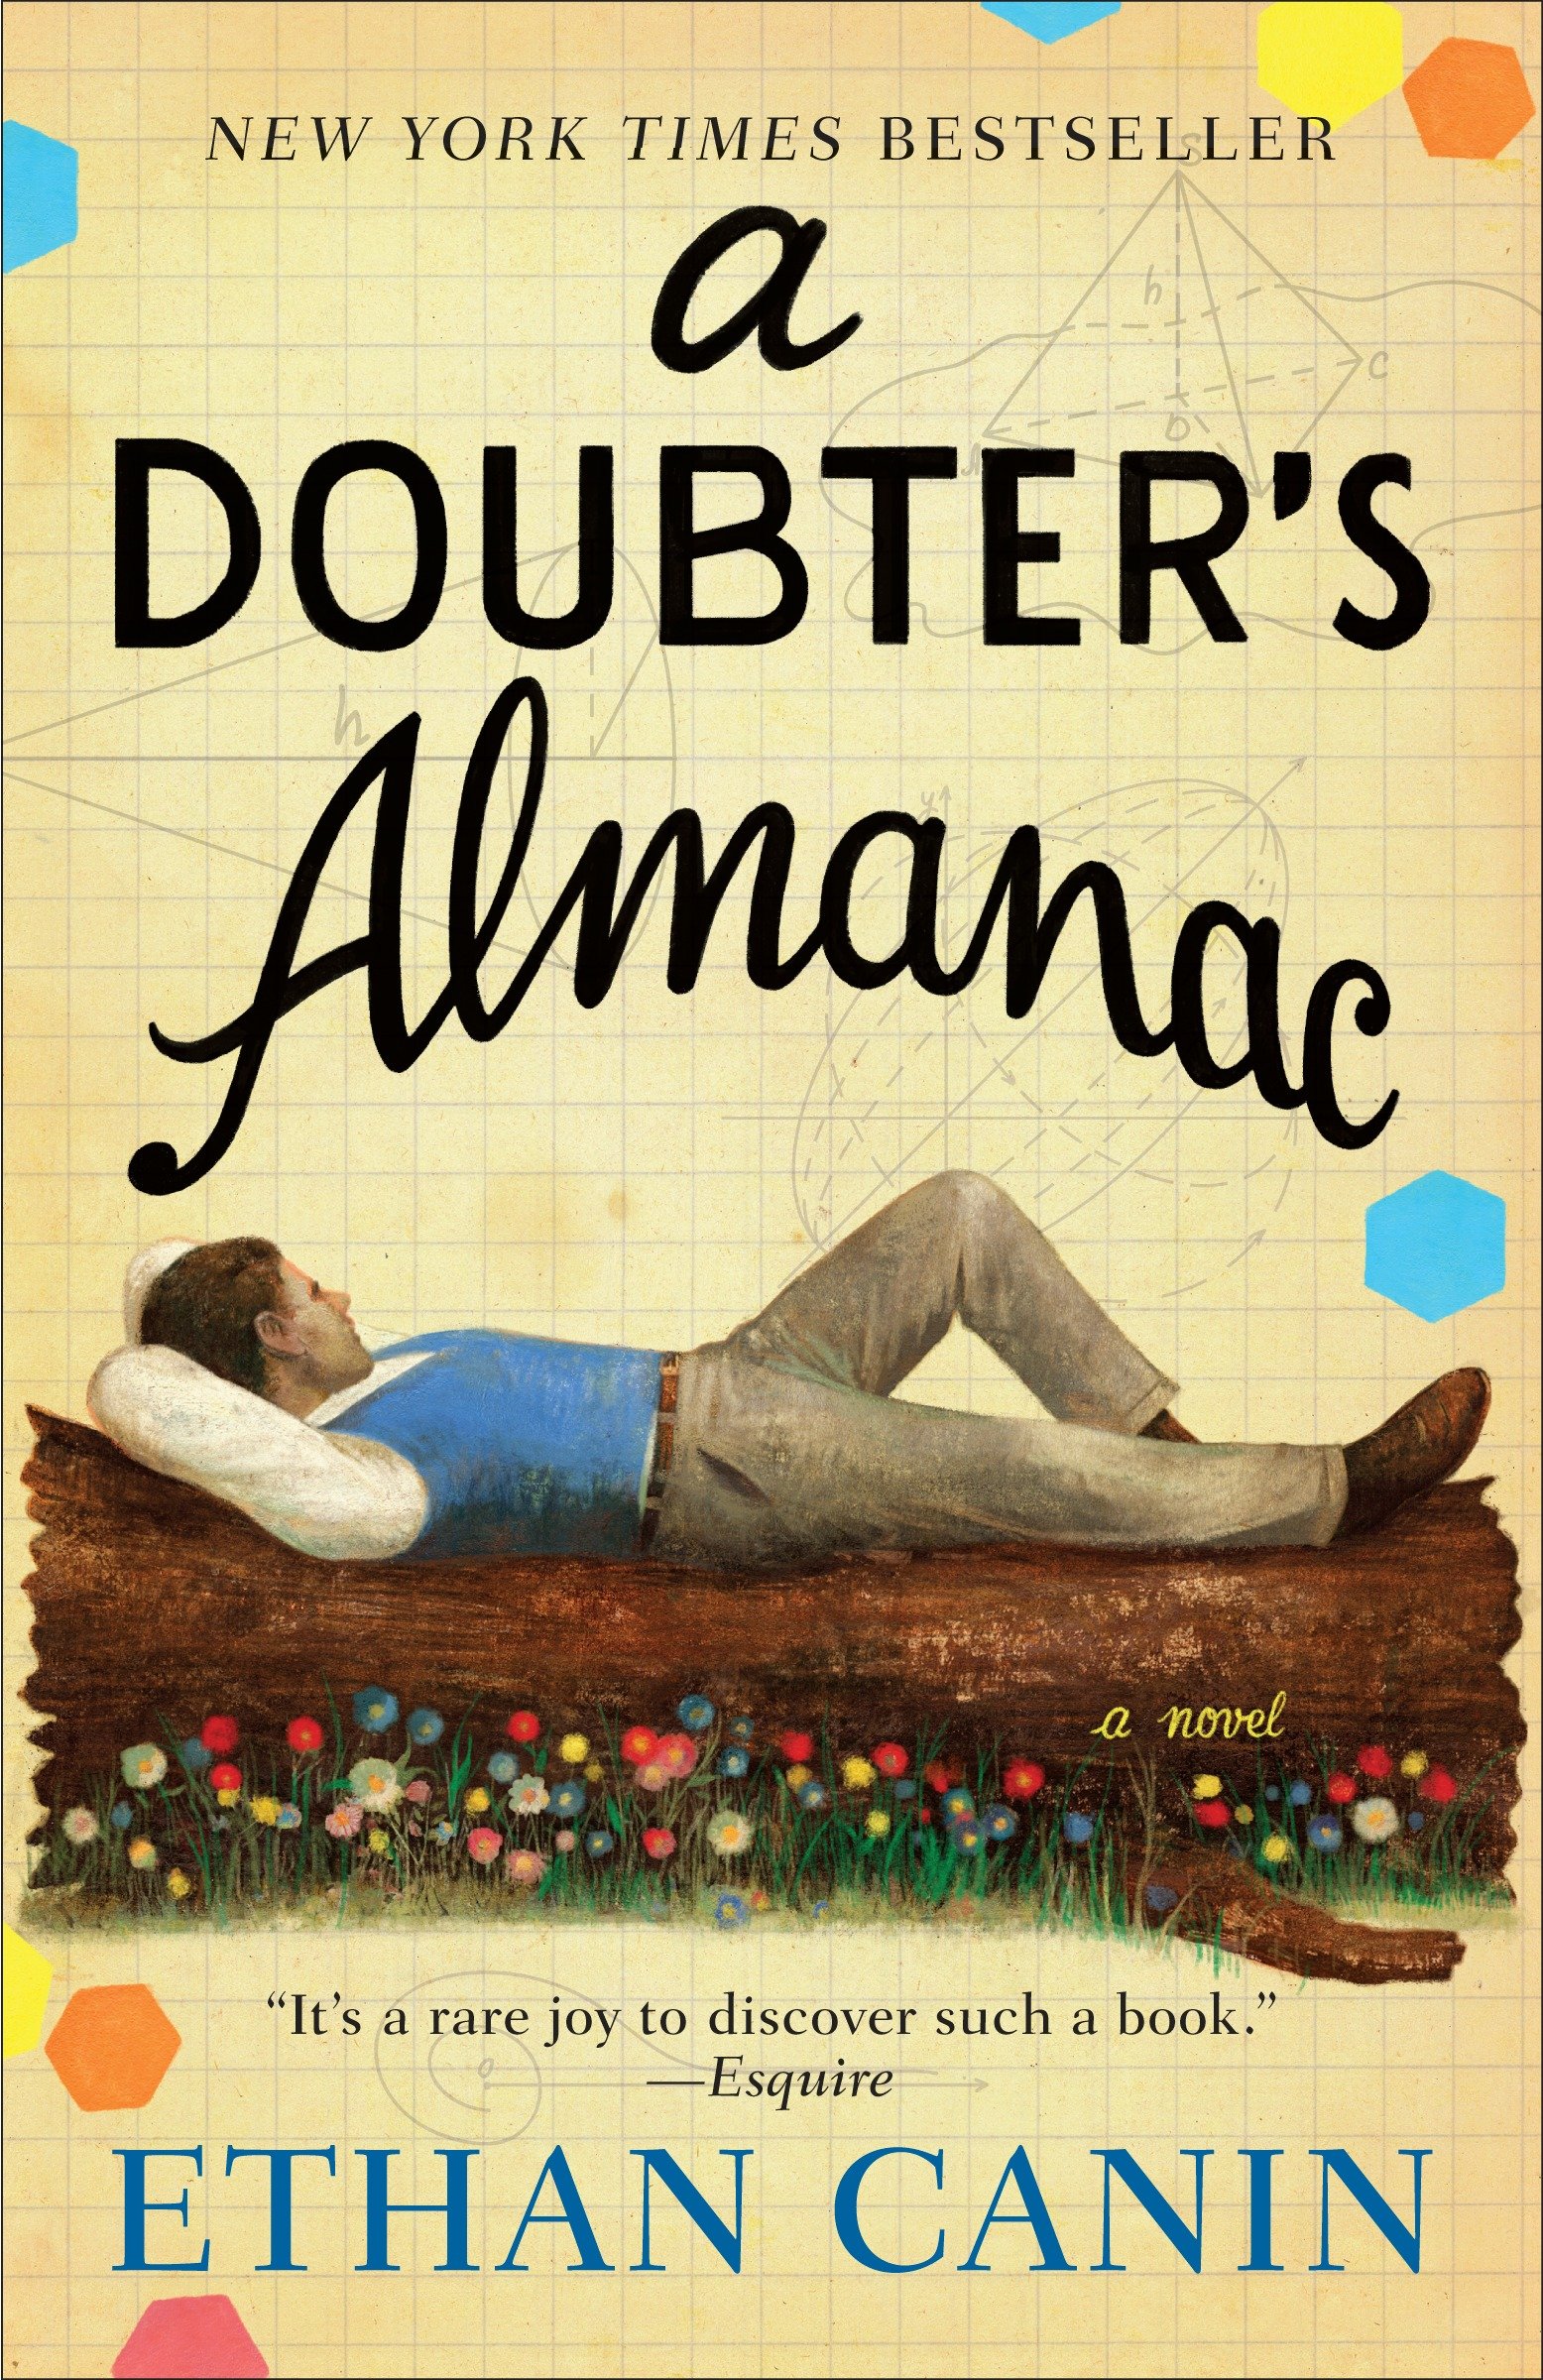 A doubter's almanac cover image